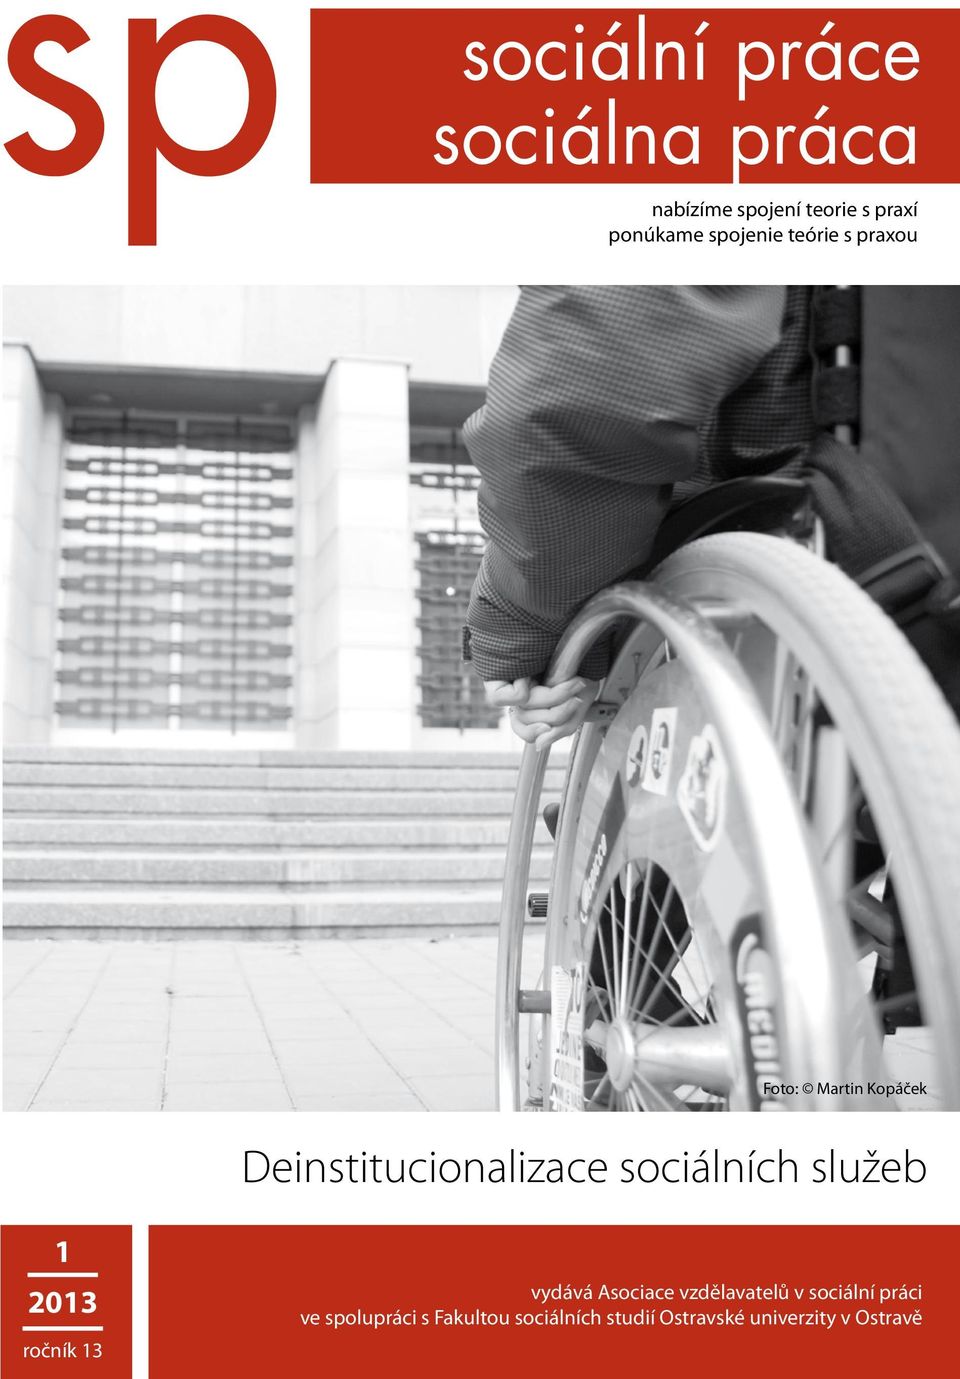 2013 ročník 13 vydává Asociace vzdělavatelů v sociální práci ve